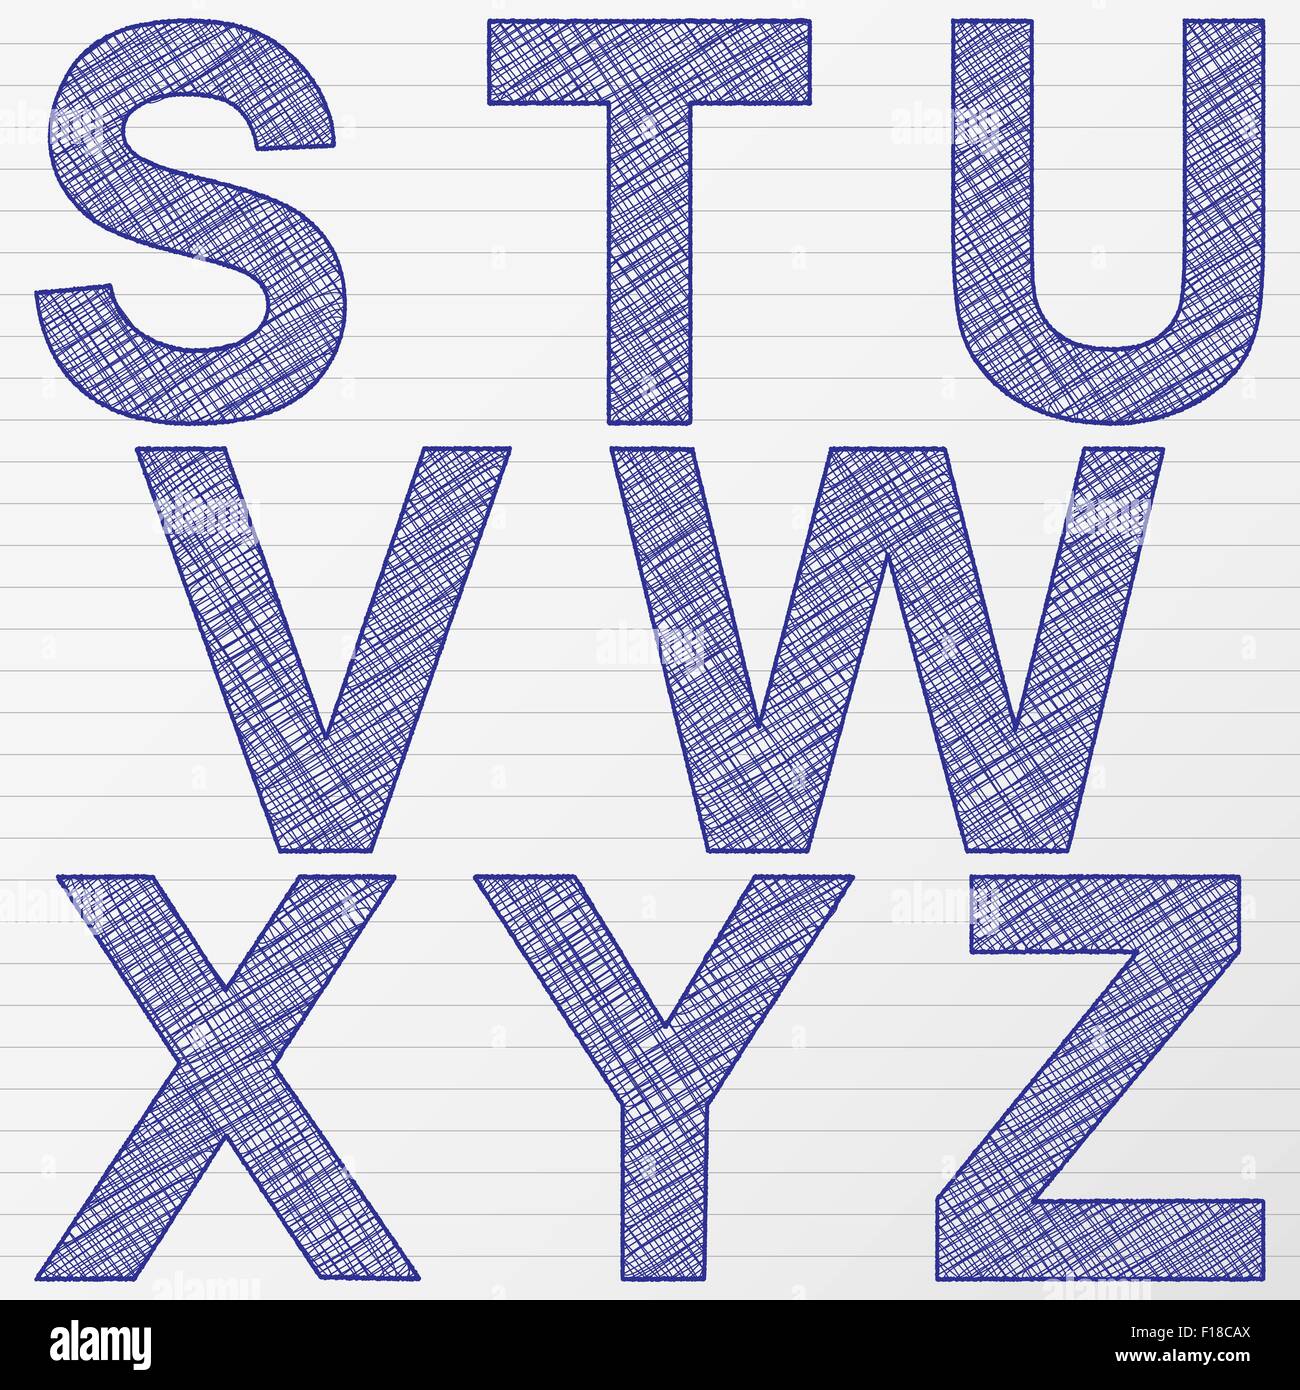 Kratzen Sie Buchstaben von S bis Z. Vektor-Illustration. Stock Vektor